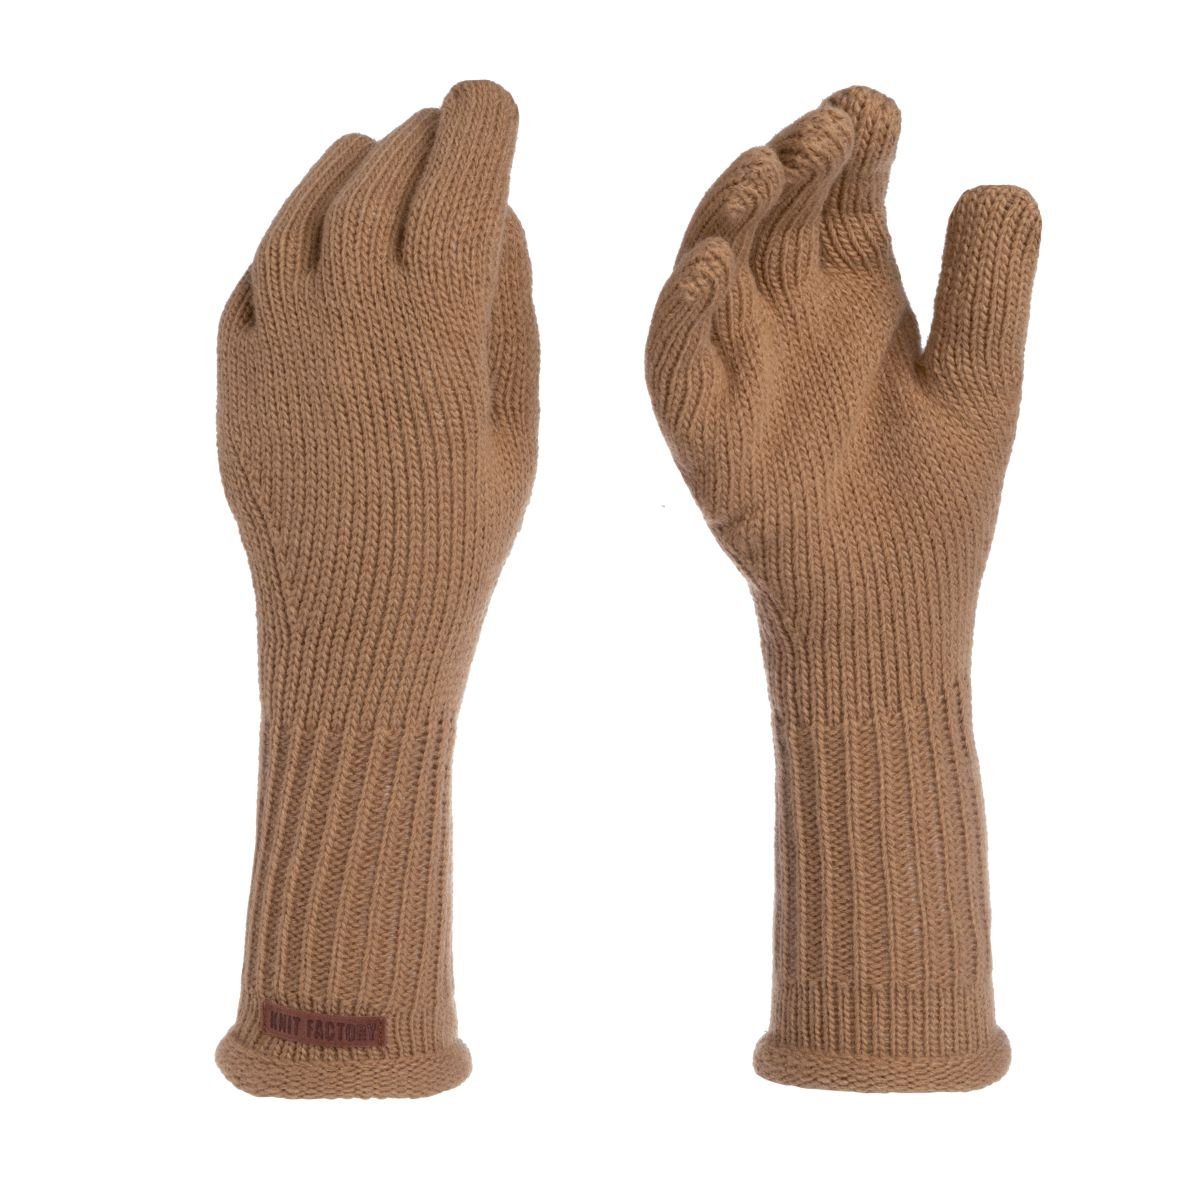 Knit Factory Strickhandschuhe Lana Handschuhe One Size Glatt Beige Handschuhe Handstulpen Handschuhe ihne Finger